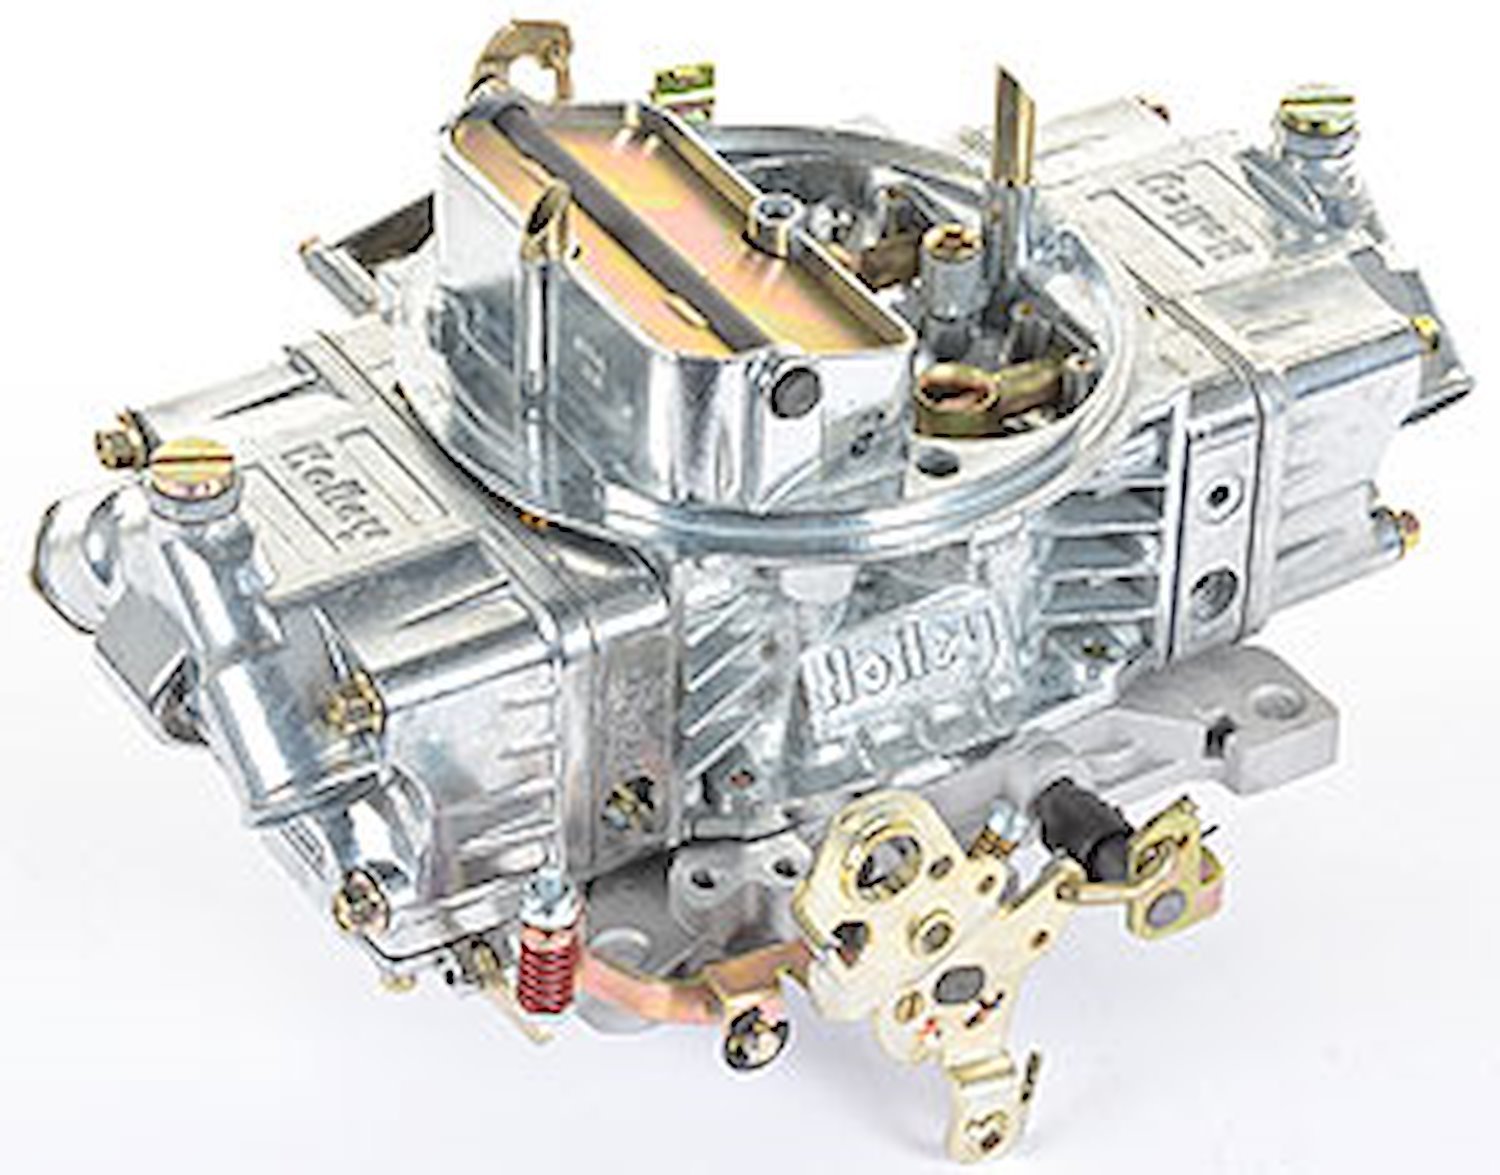 Zinc-Coated Double Pumper Carburetor 650 cfm